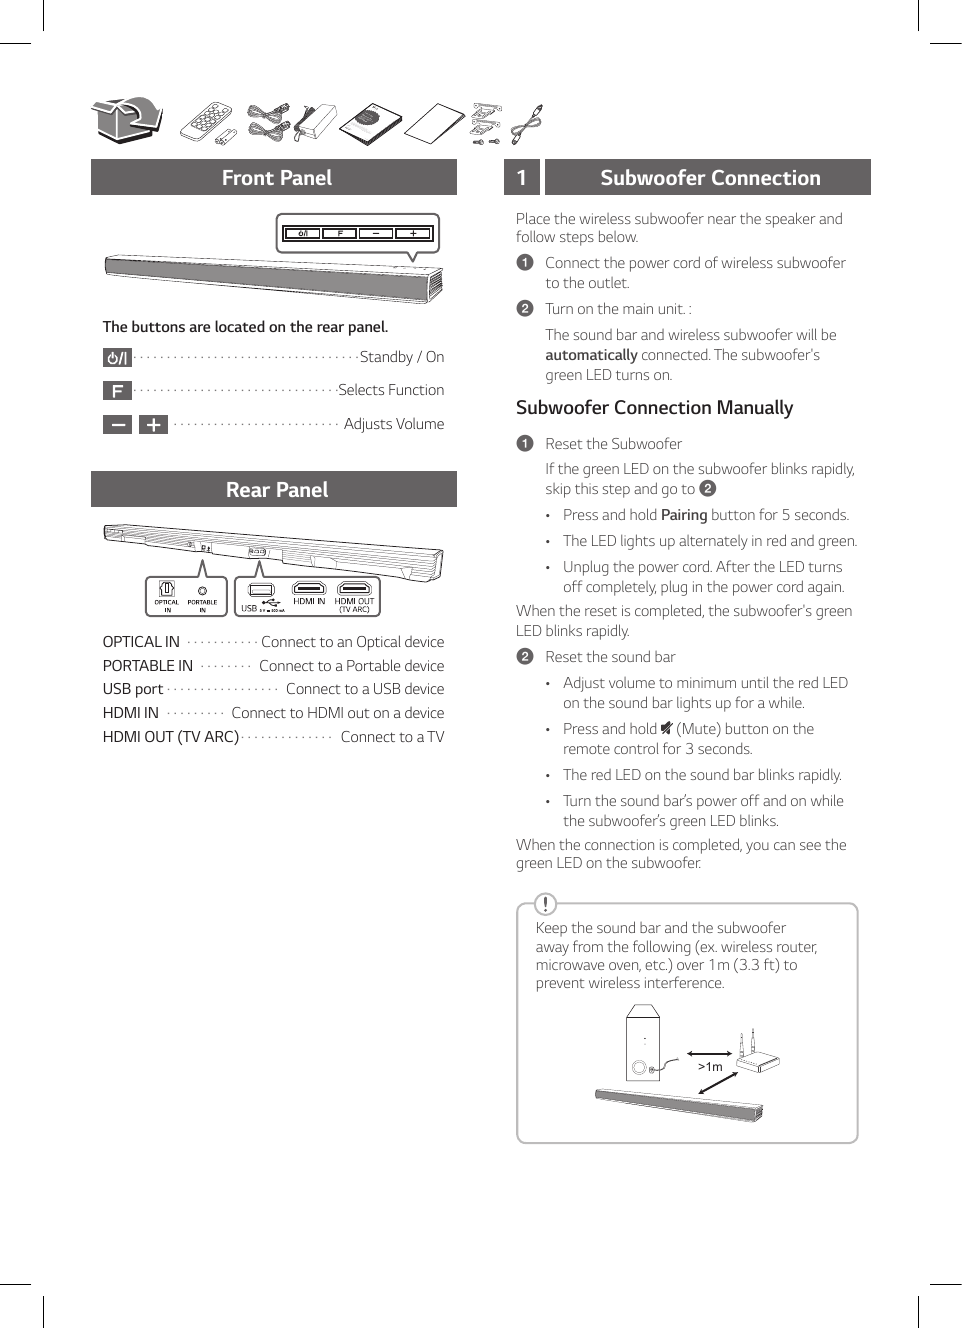 Page 3 of 8 - LG SHC4 User Manual Guide SH4.DUSALL5 SIM ENG MFL69392897-FFR